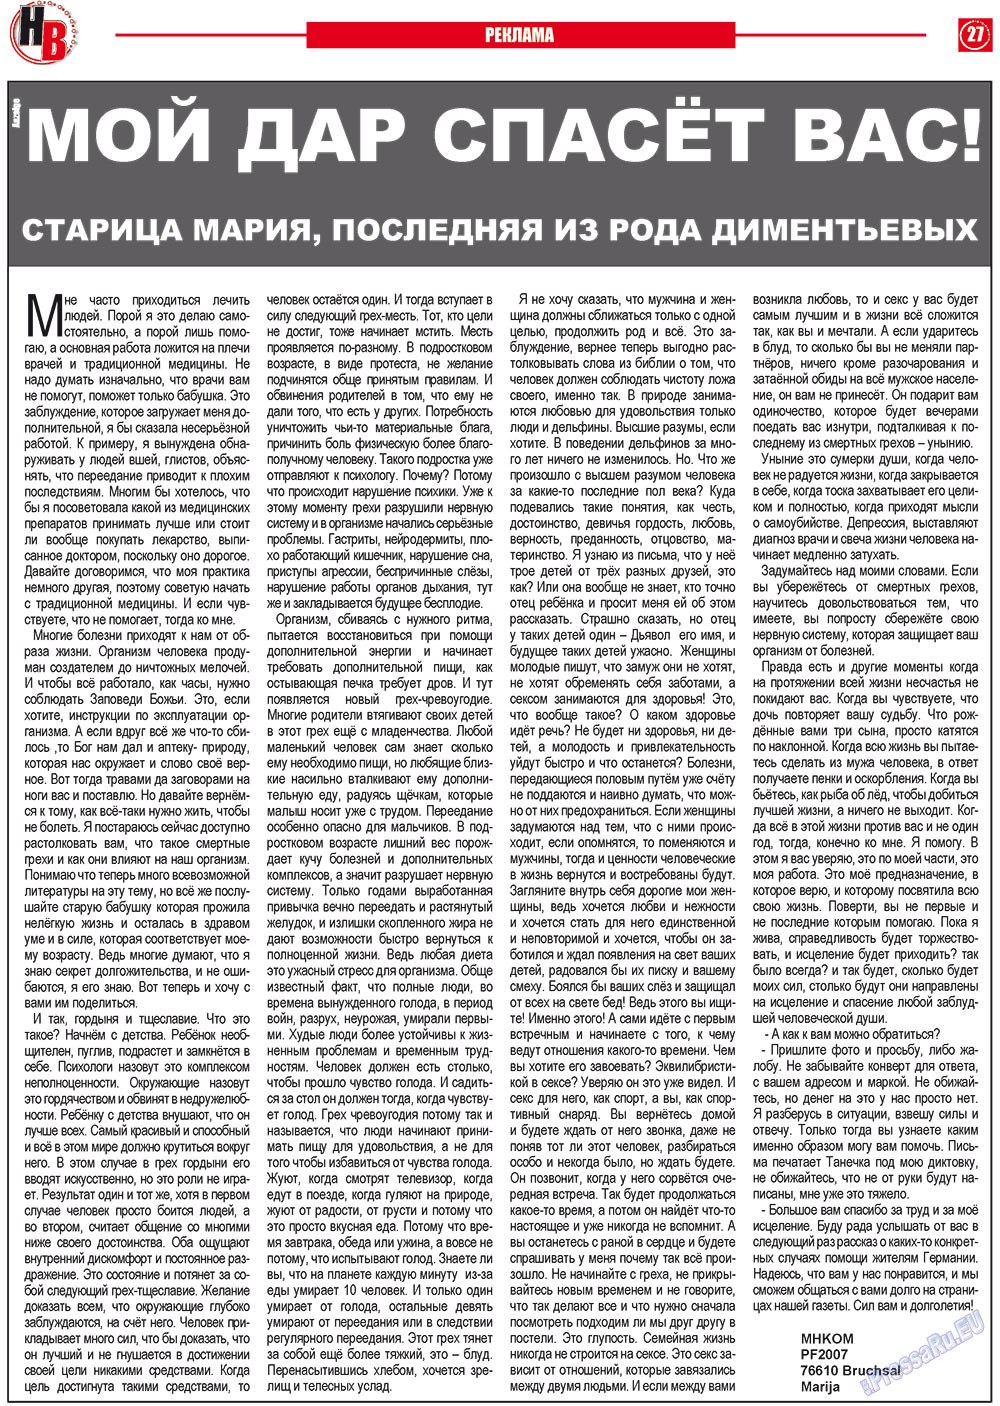 Наше время, газета. 2012 №2 стр.27